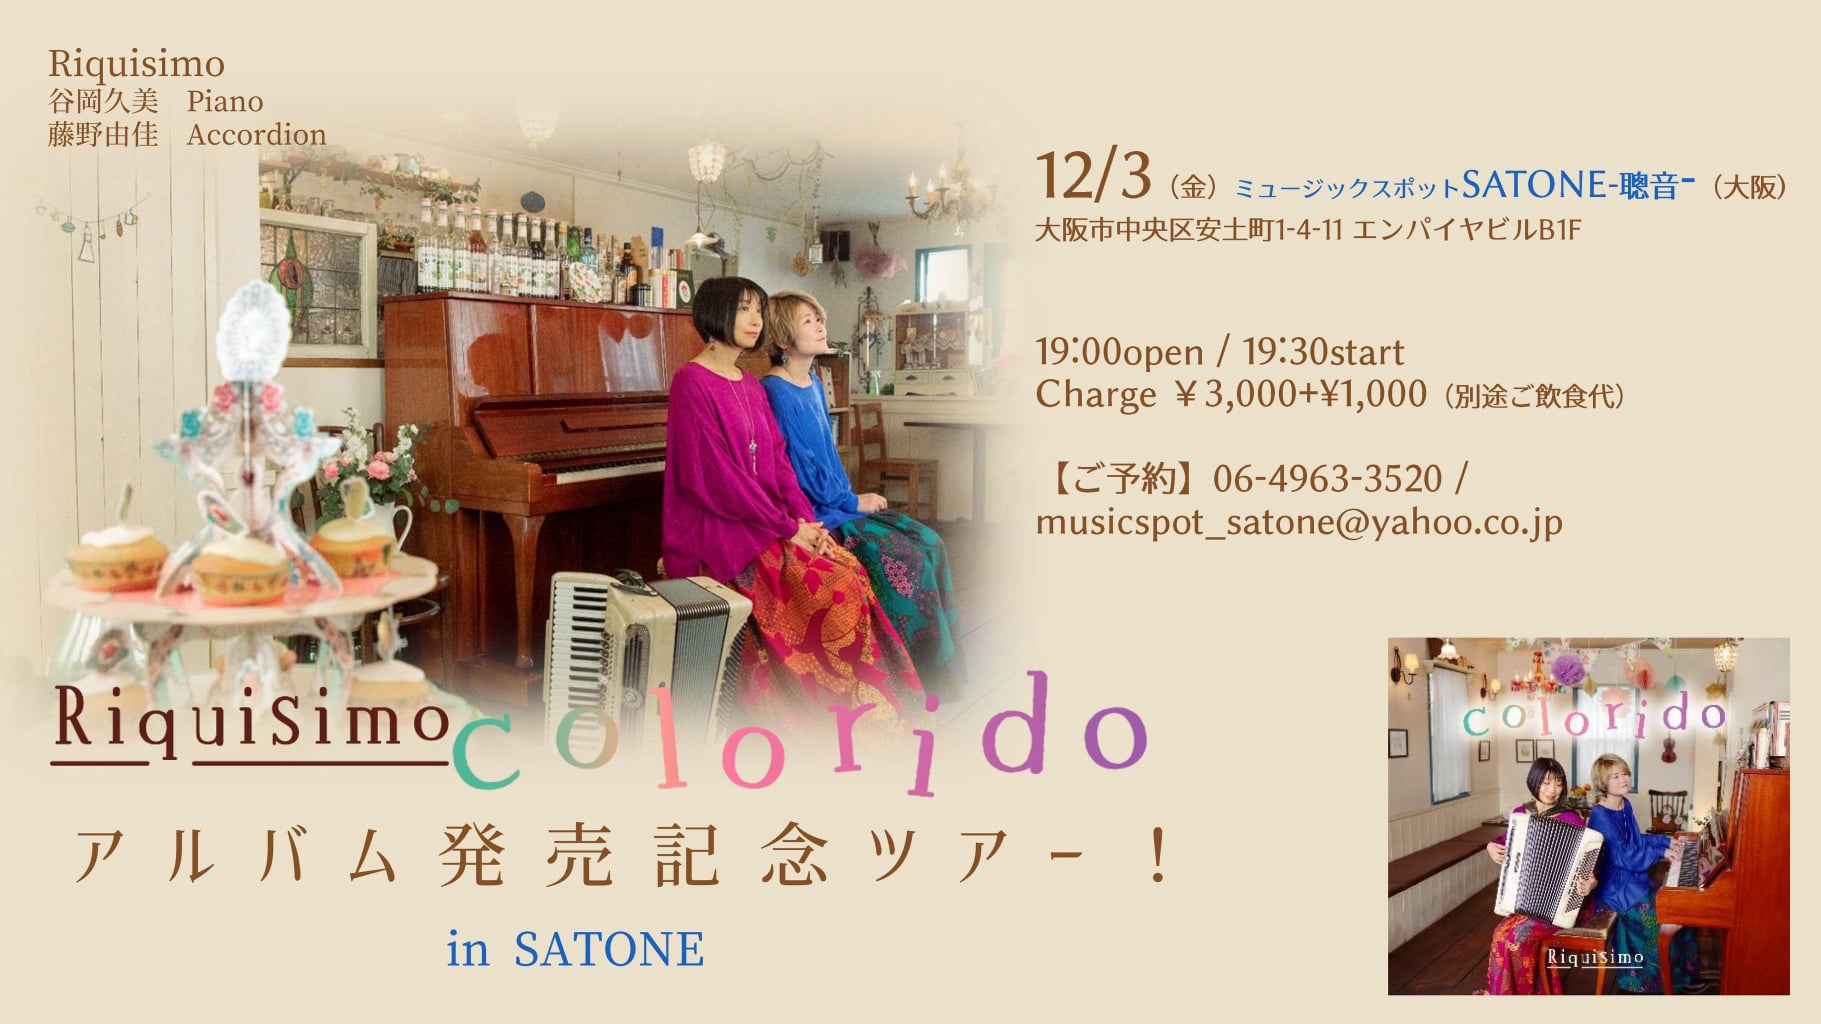 12/3（金）Riquisimo  CD「colorido」発売記念ライブ